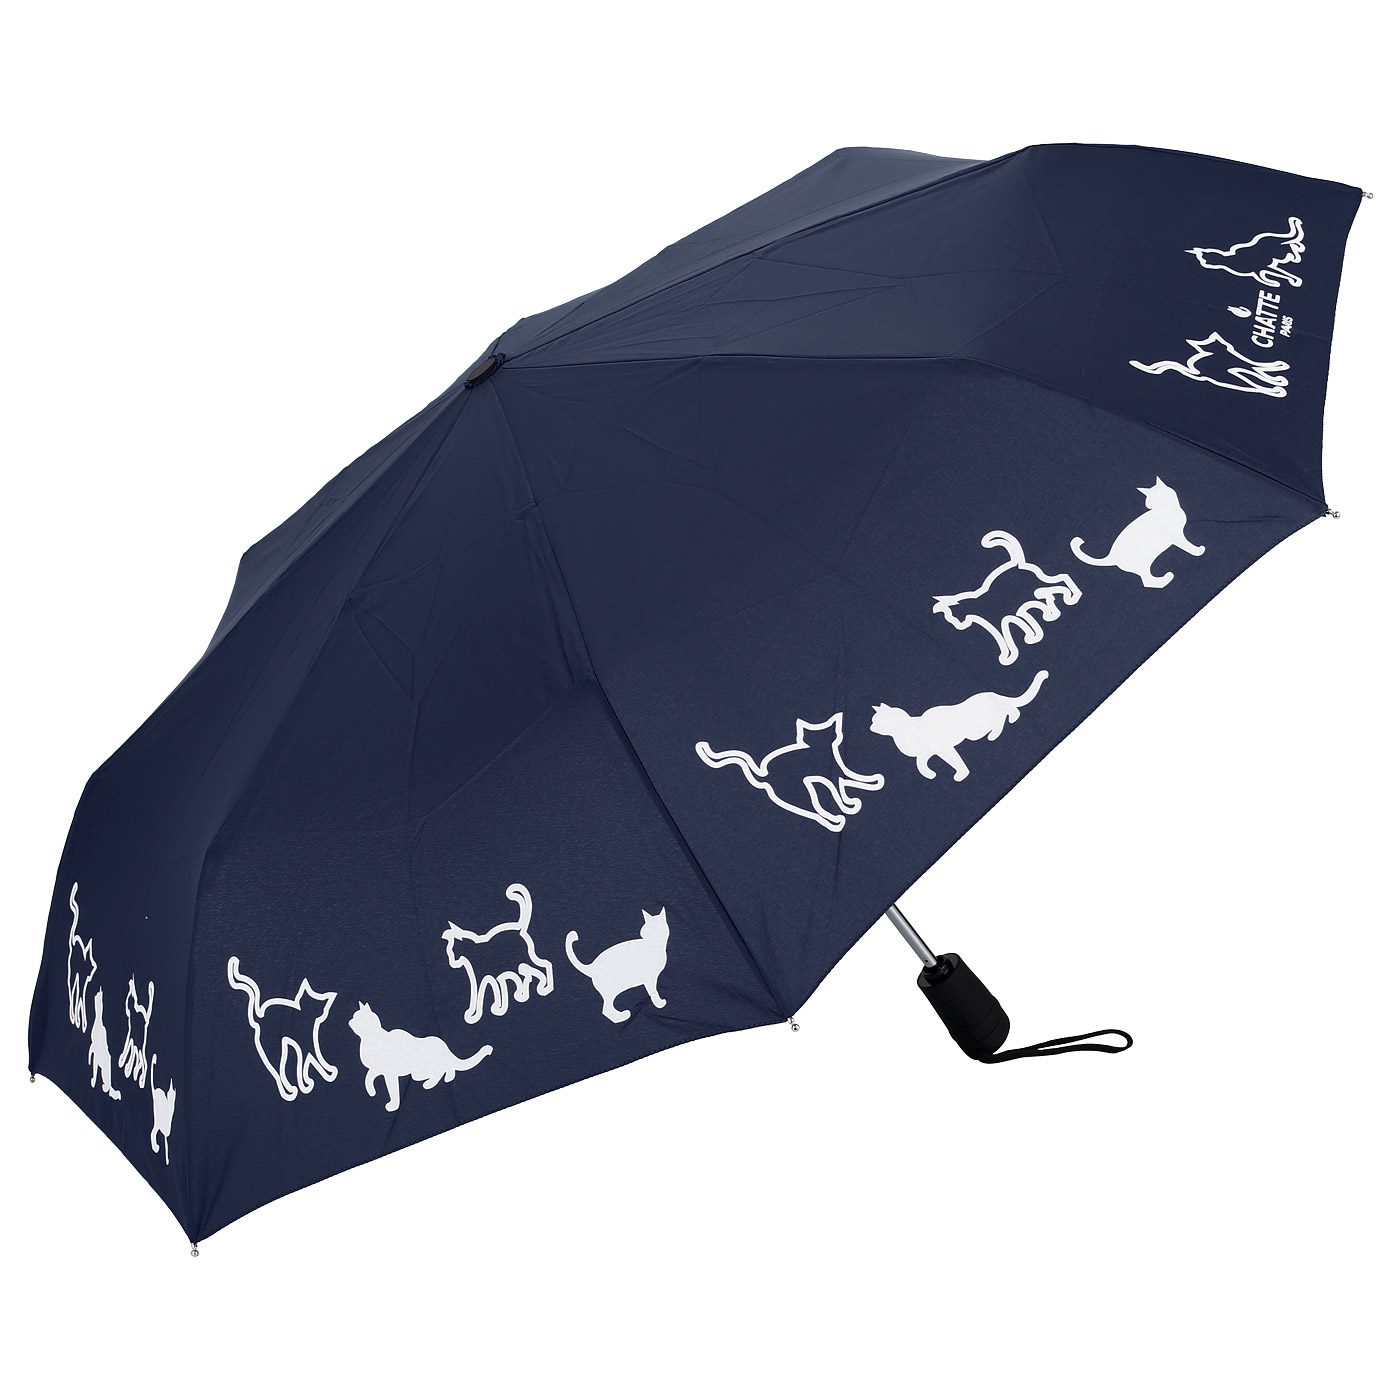 Купить зонтик женский прочный. Зонт chatte. Gea 87071 зонт. Зонт женский Fabretti ufr0004, голубой. Зонт ф140.